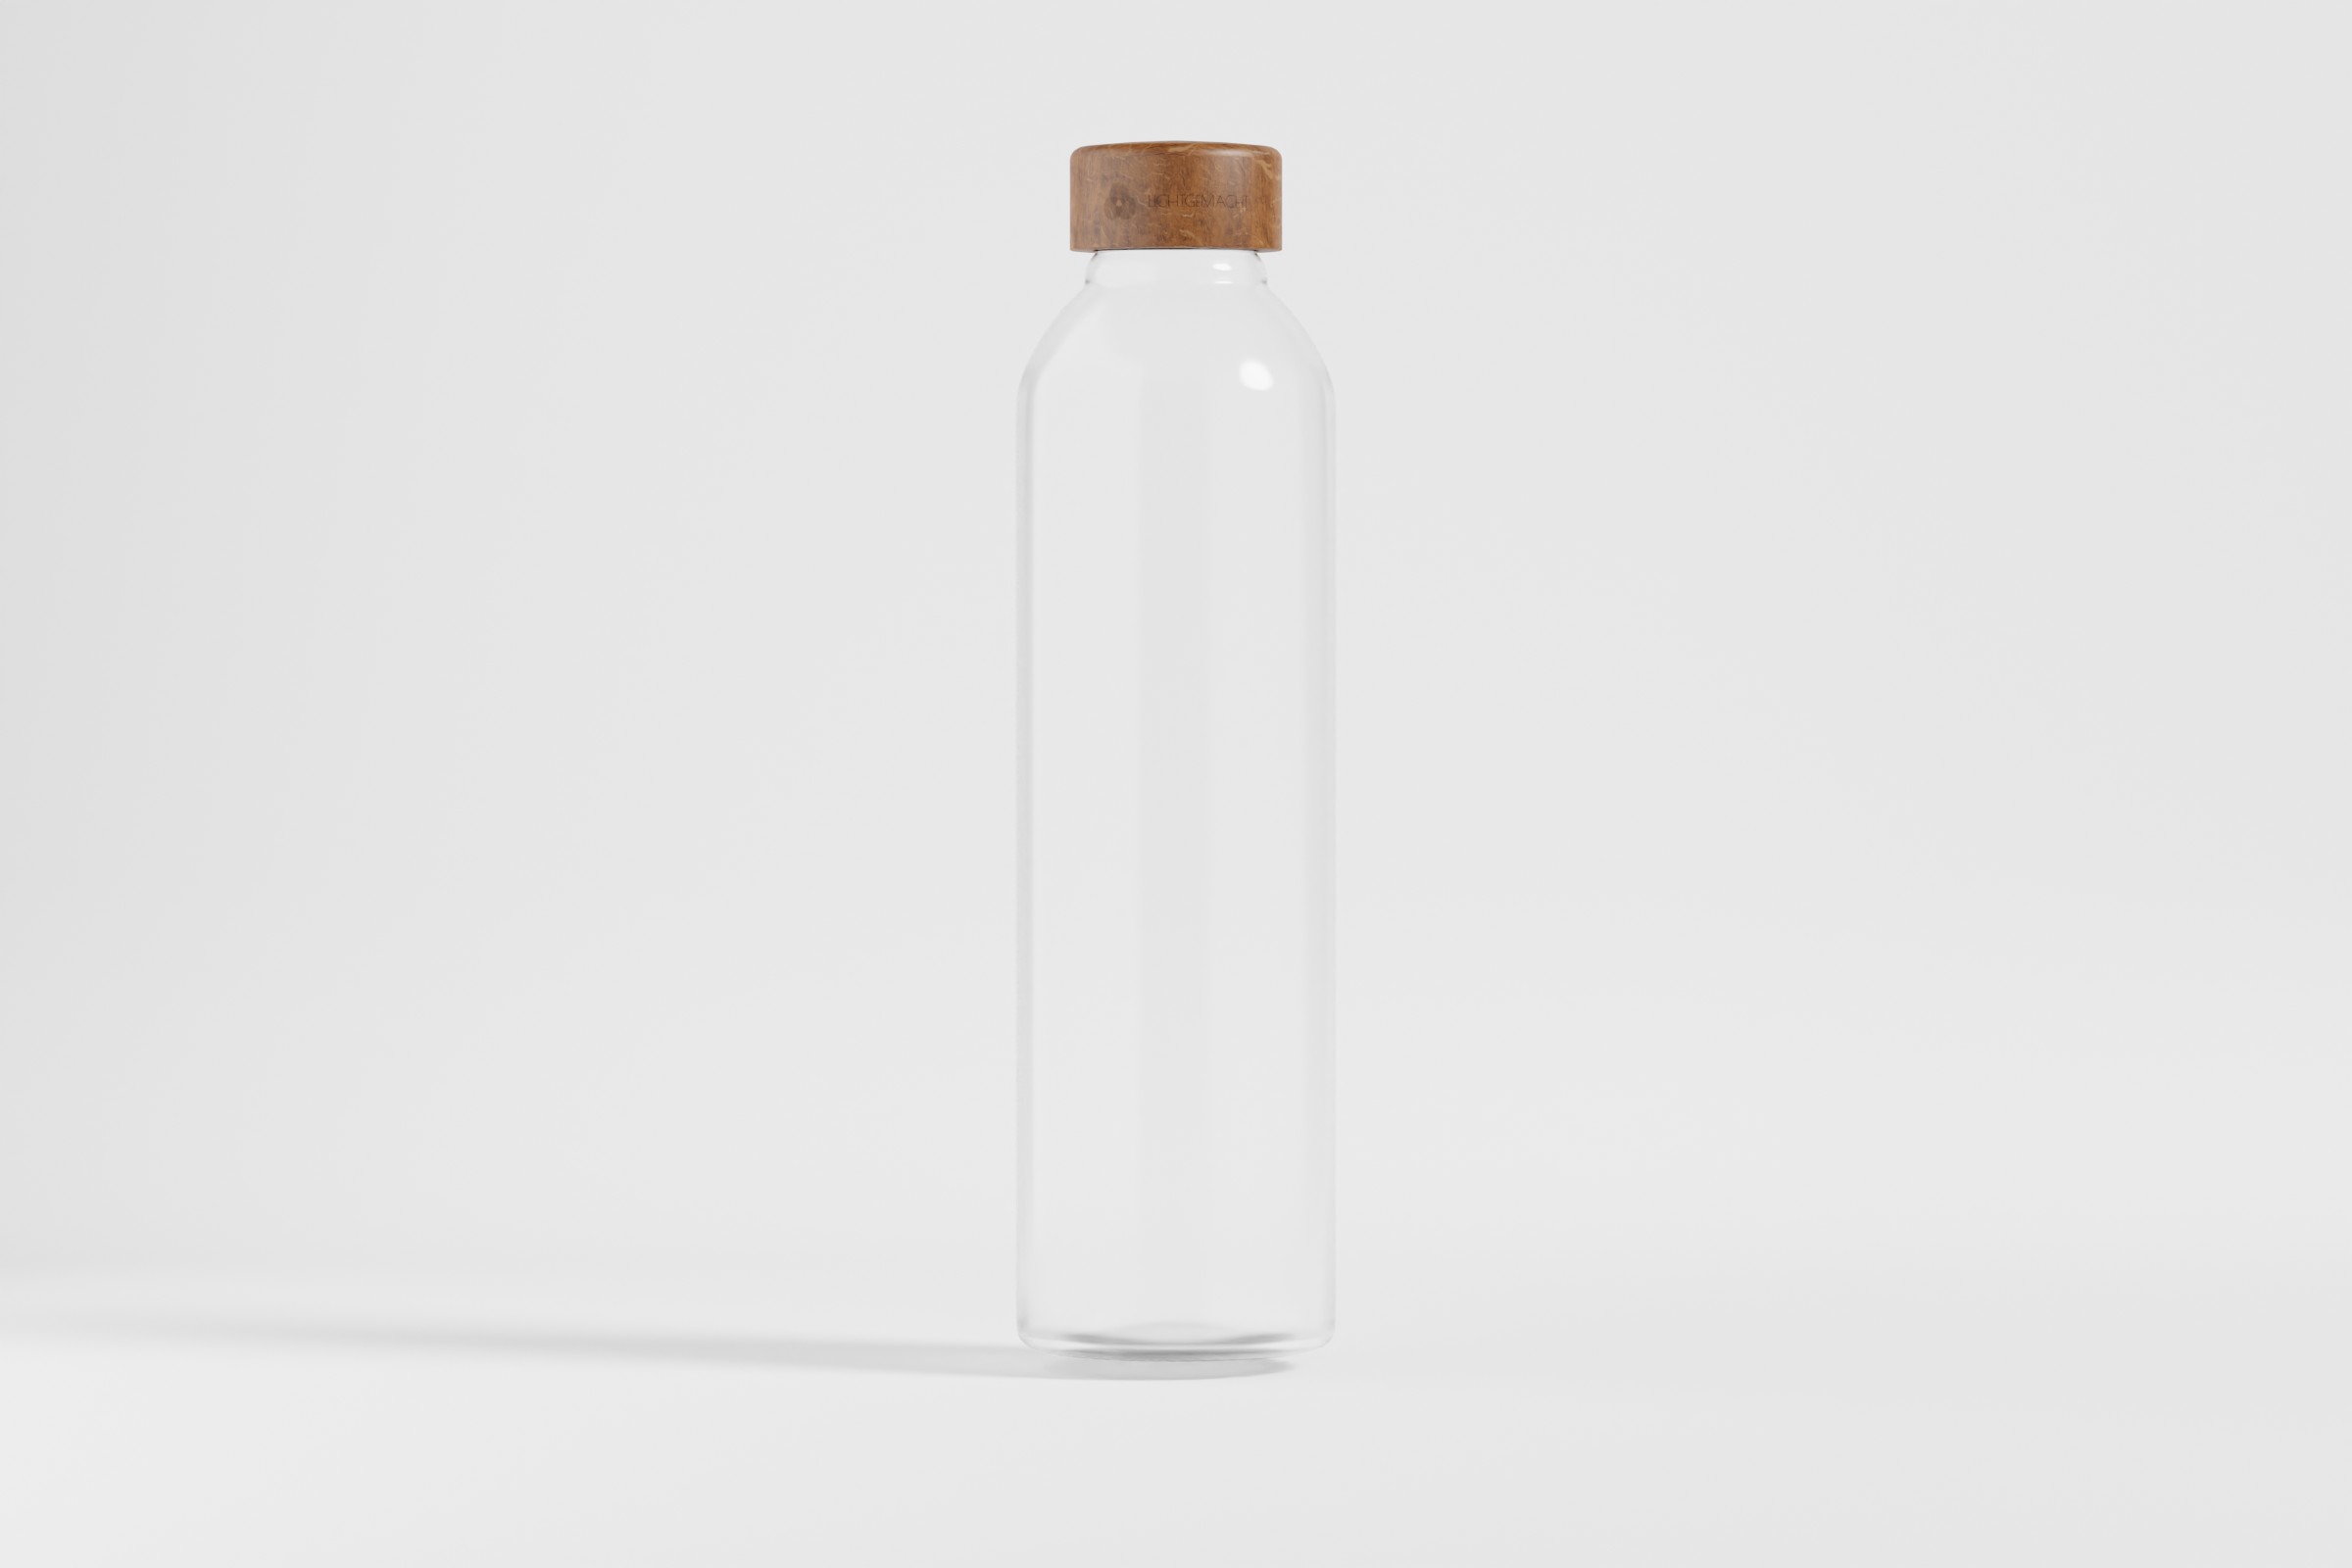 3D Render einer Glasflasche mit Holzdeckel vor einer weißen Hohlkehle.